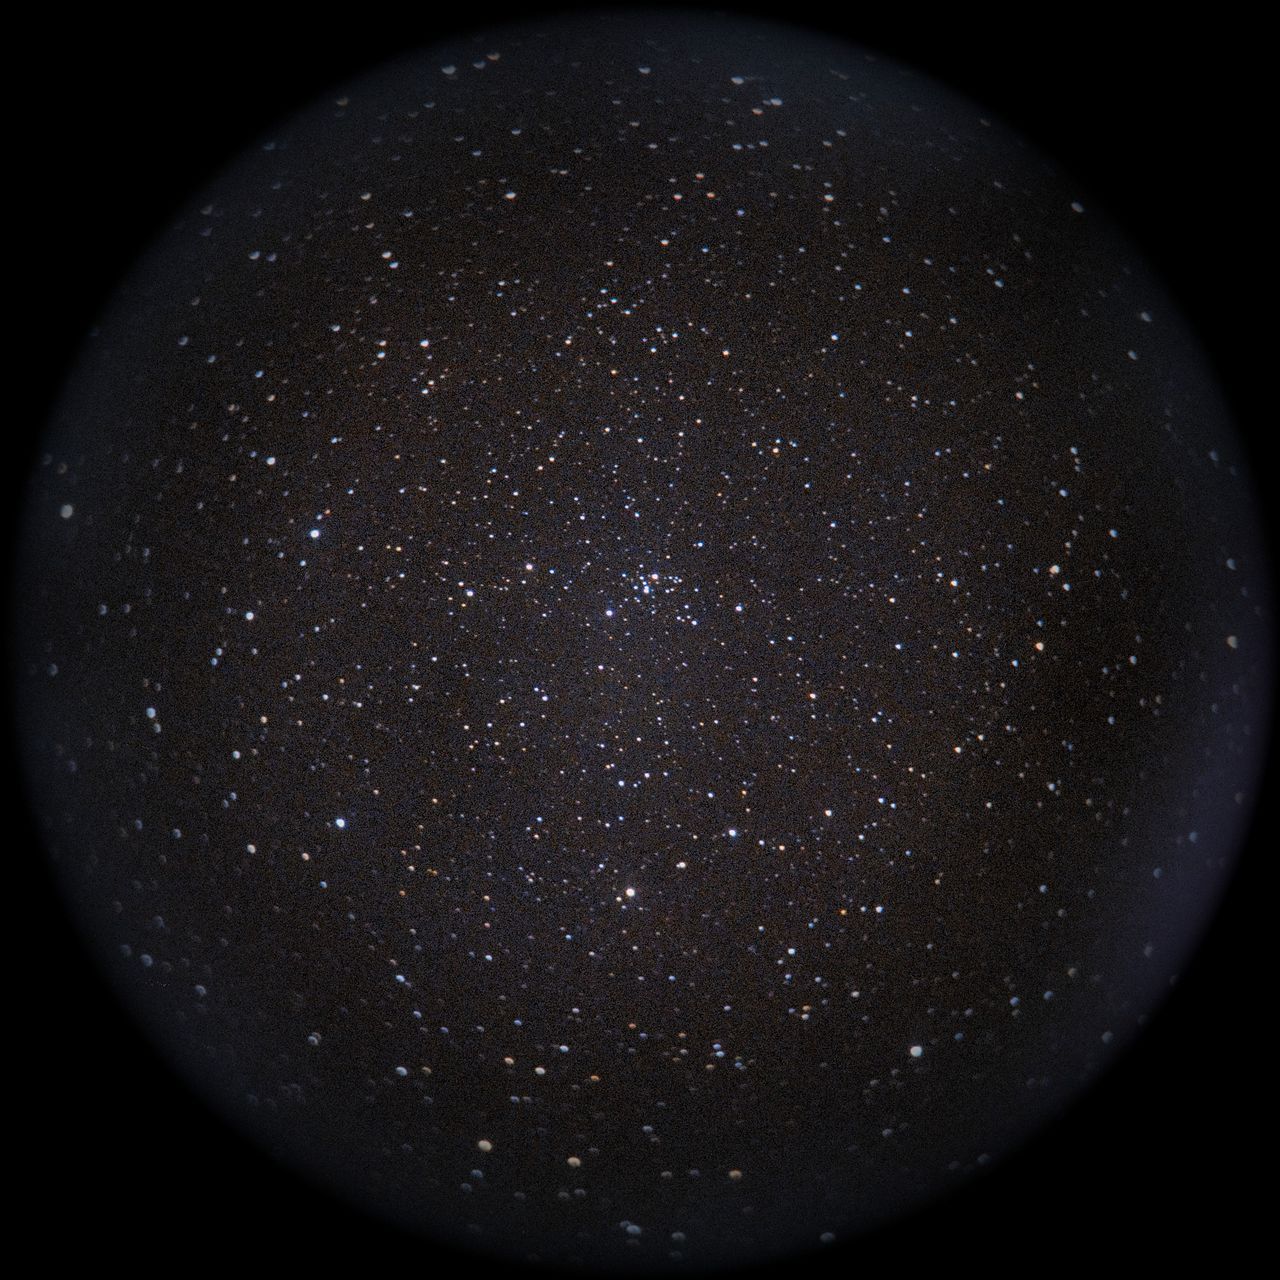 Image of NGC2186